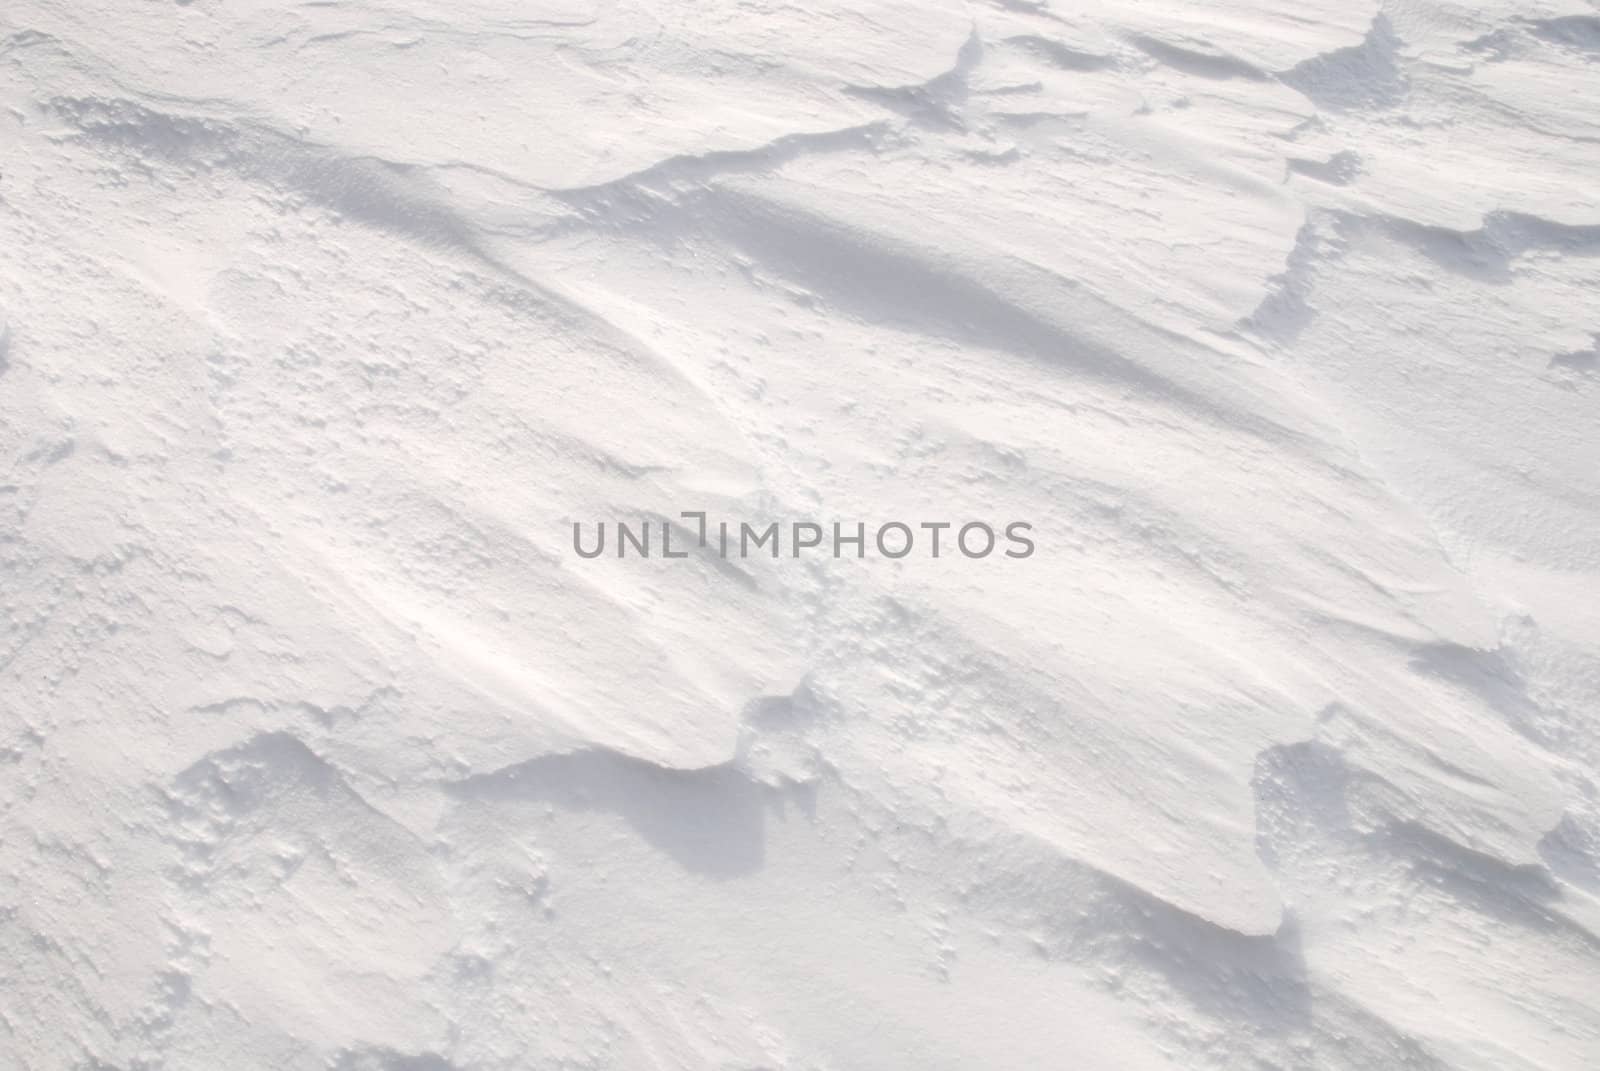 Texture of a fresh fallen snow on a field